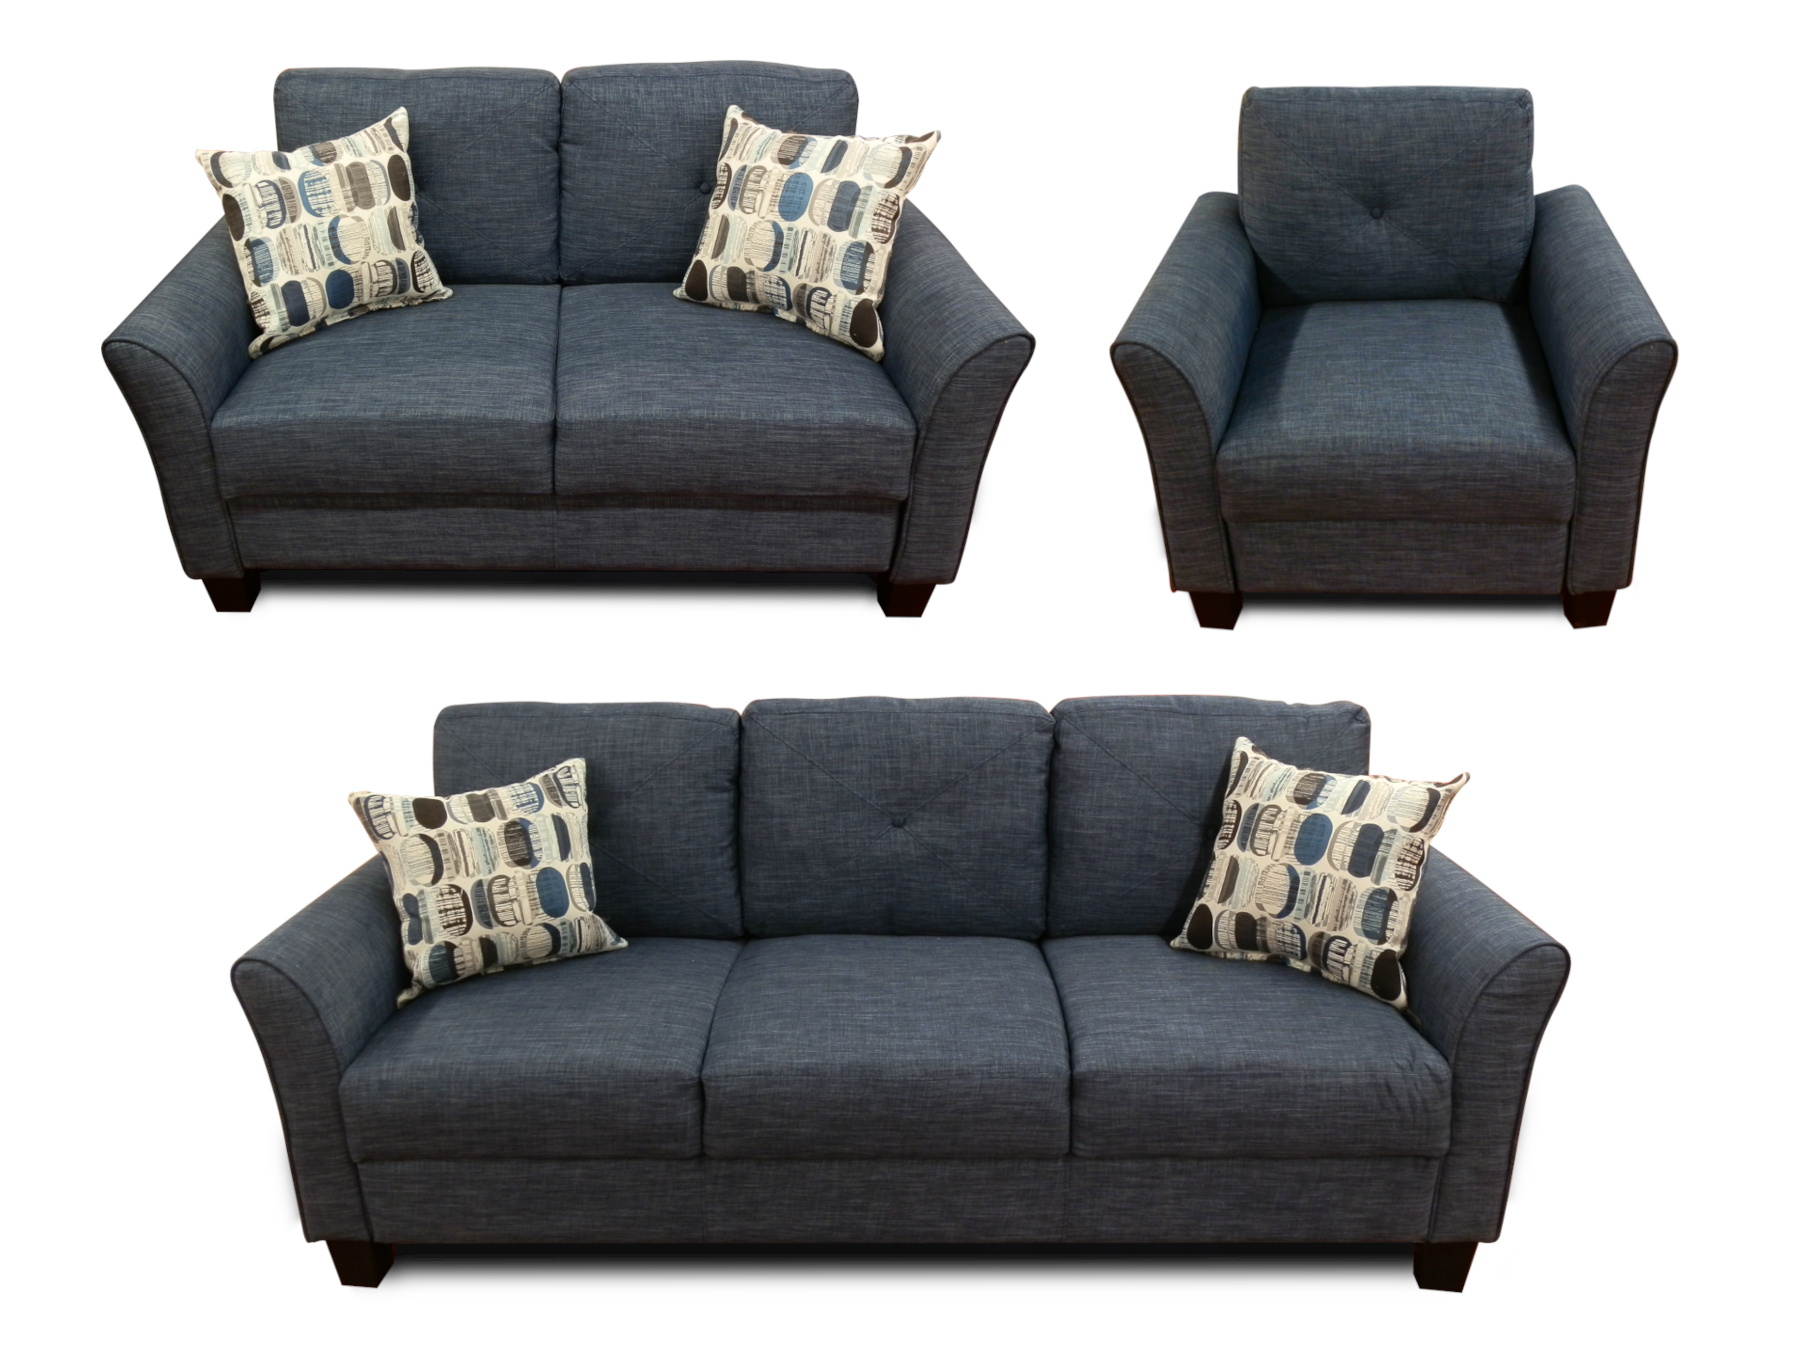 25518 - sofa - set - PR-EDWINA - composite